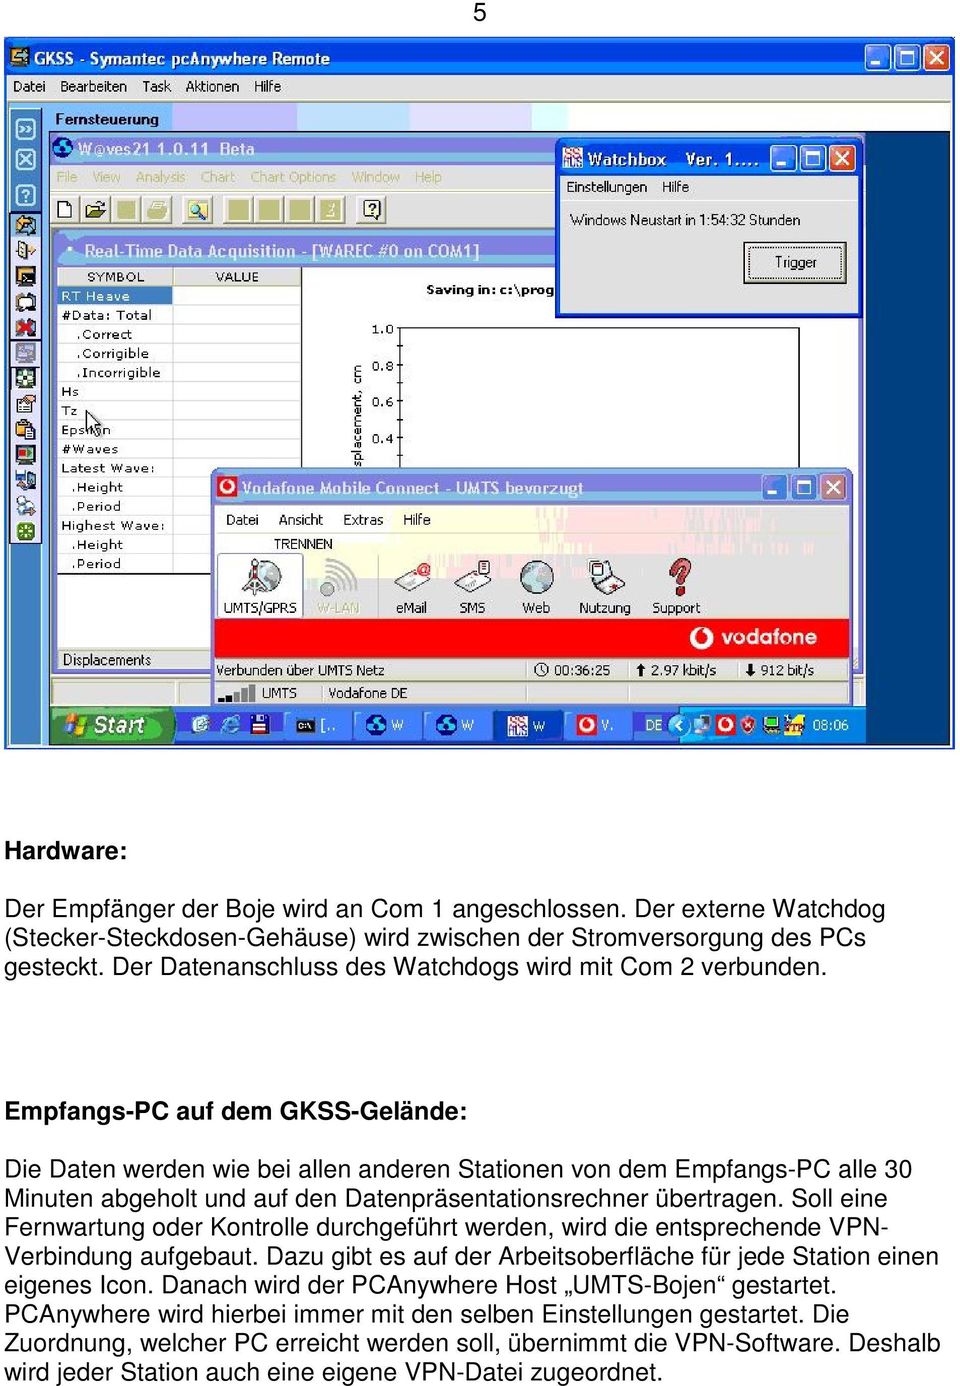 Empfangs-PC auf dem GKSS-Gelände: Die Daten werden wie bei allen anderen Stationen von dem Empfangs-PC alle 30 Minuten abgeholt und auf den Datenpräsentationsrechner übertragen.